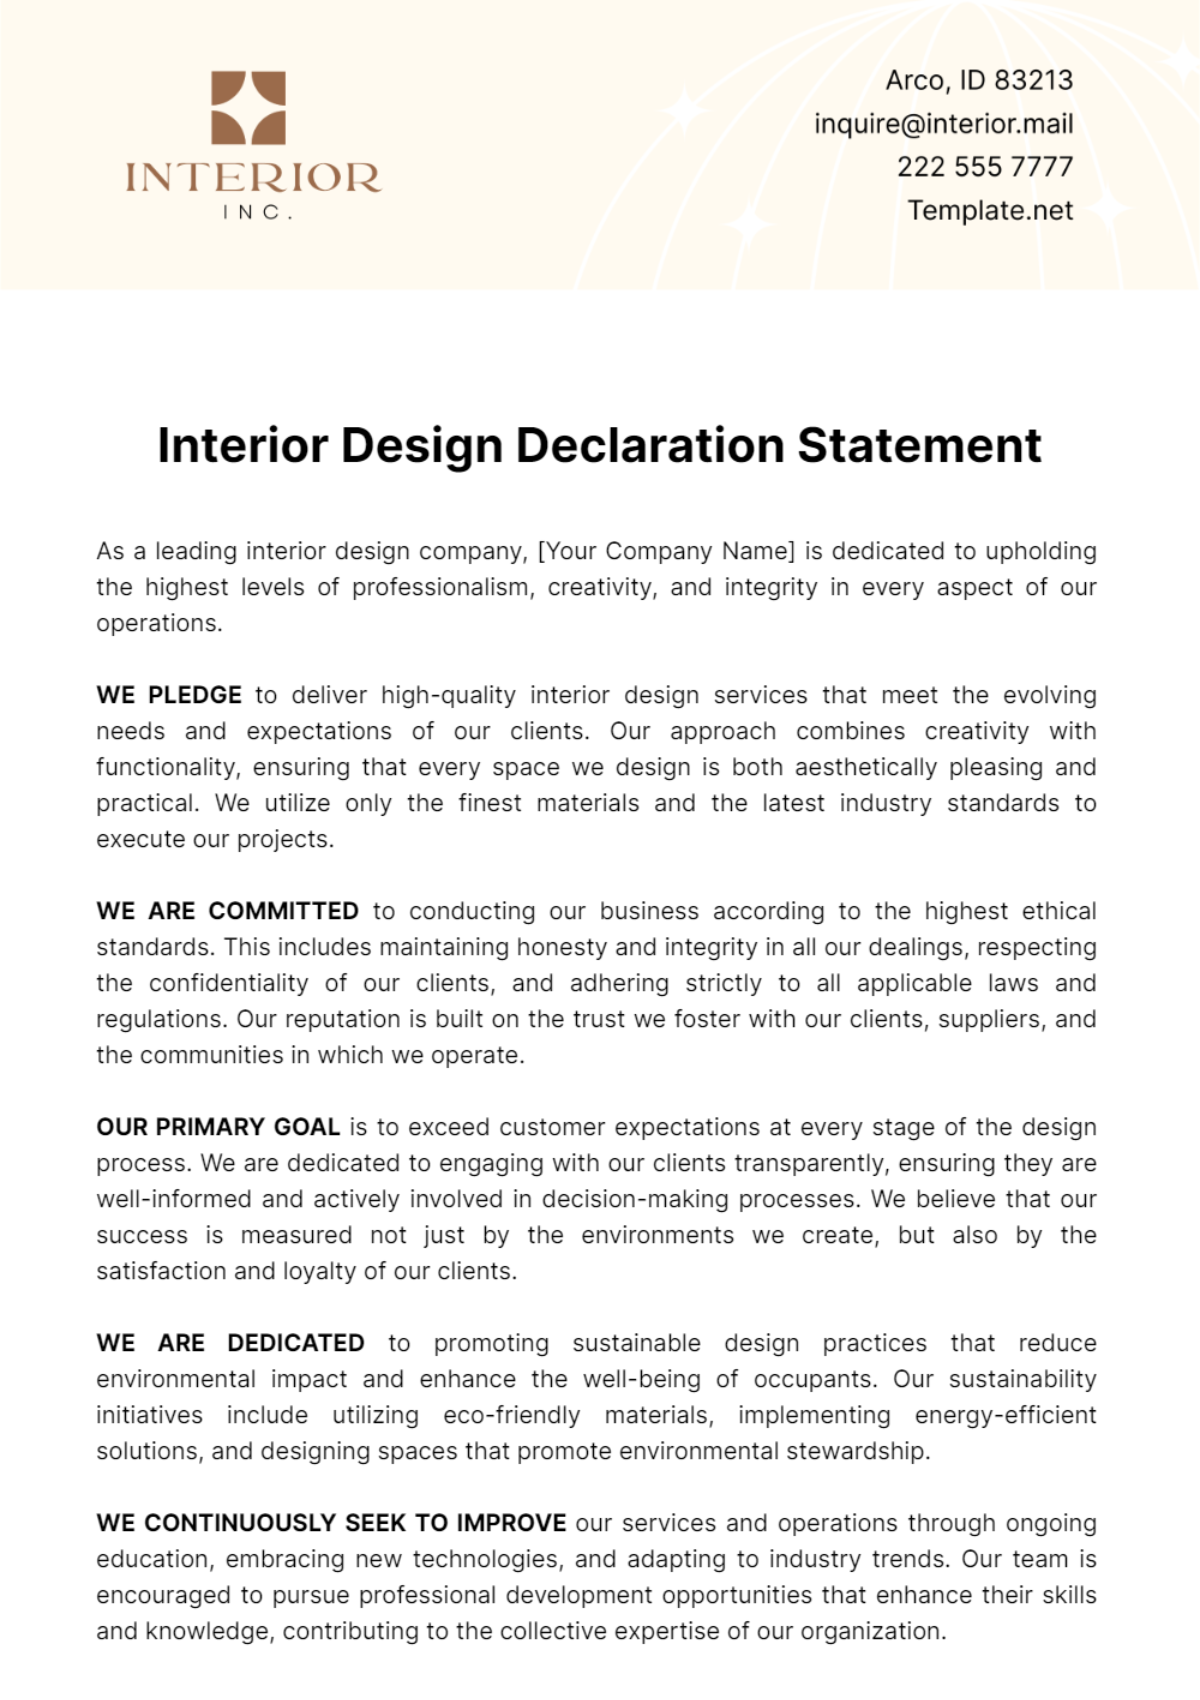 Interior Design Declaration Statement Template